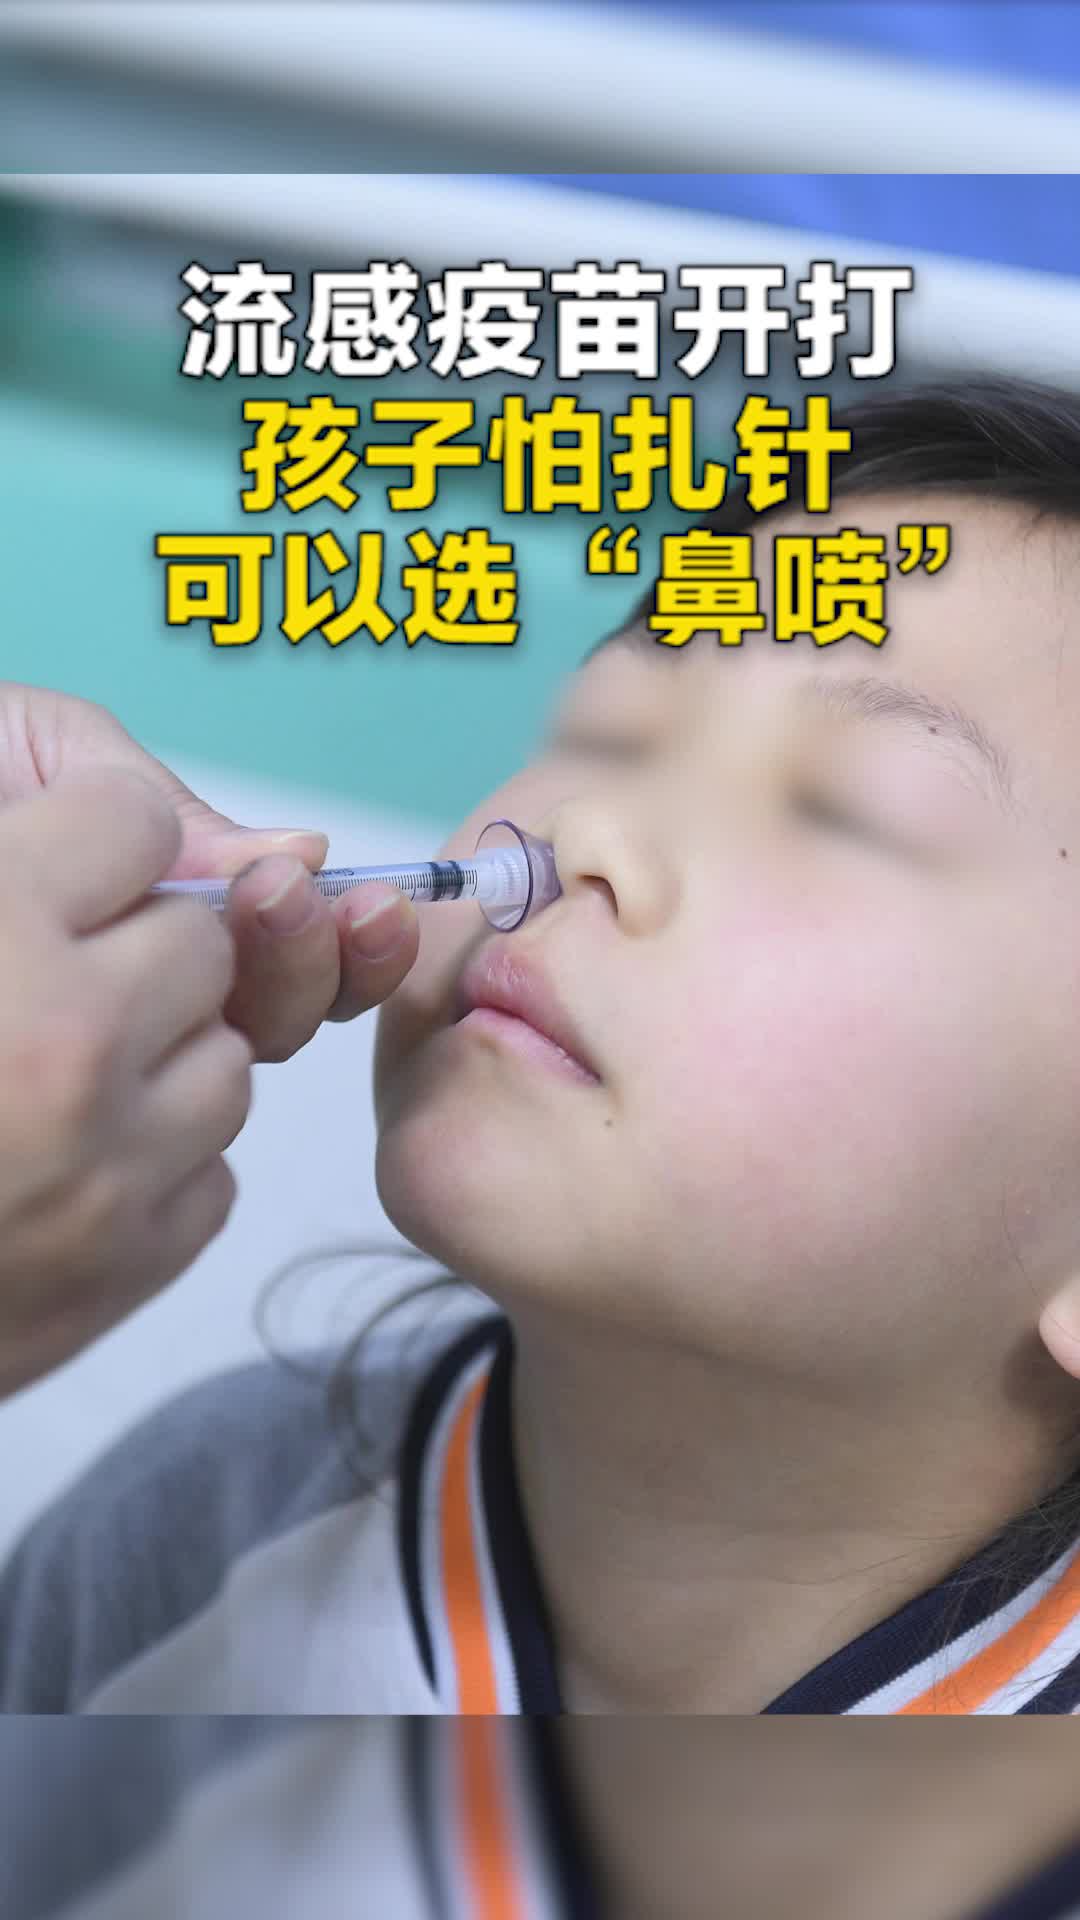 流感疫苗开打 孩子怕扎针可以选“鼻喷”